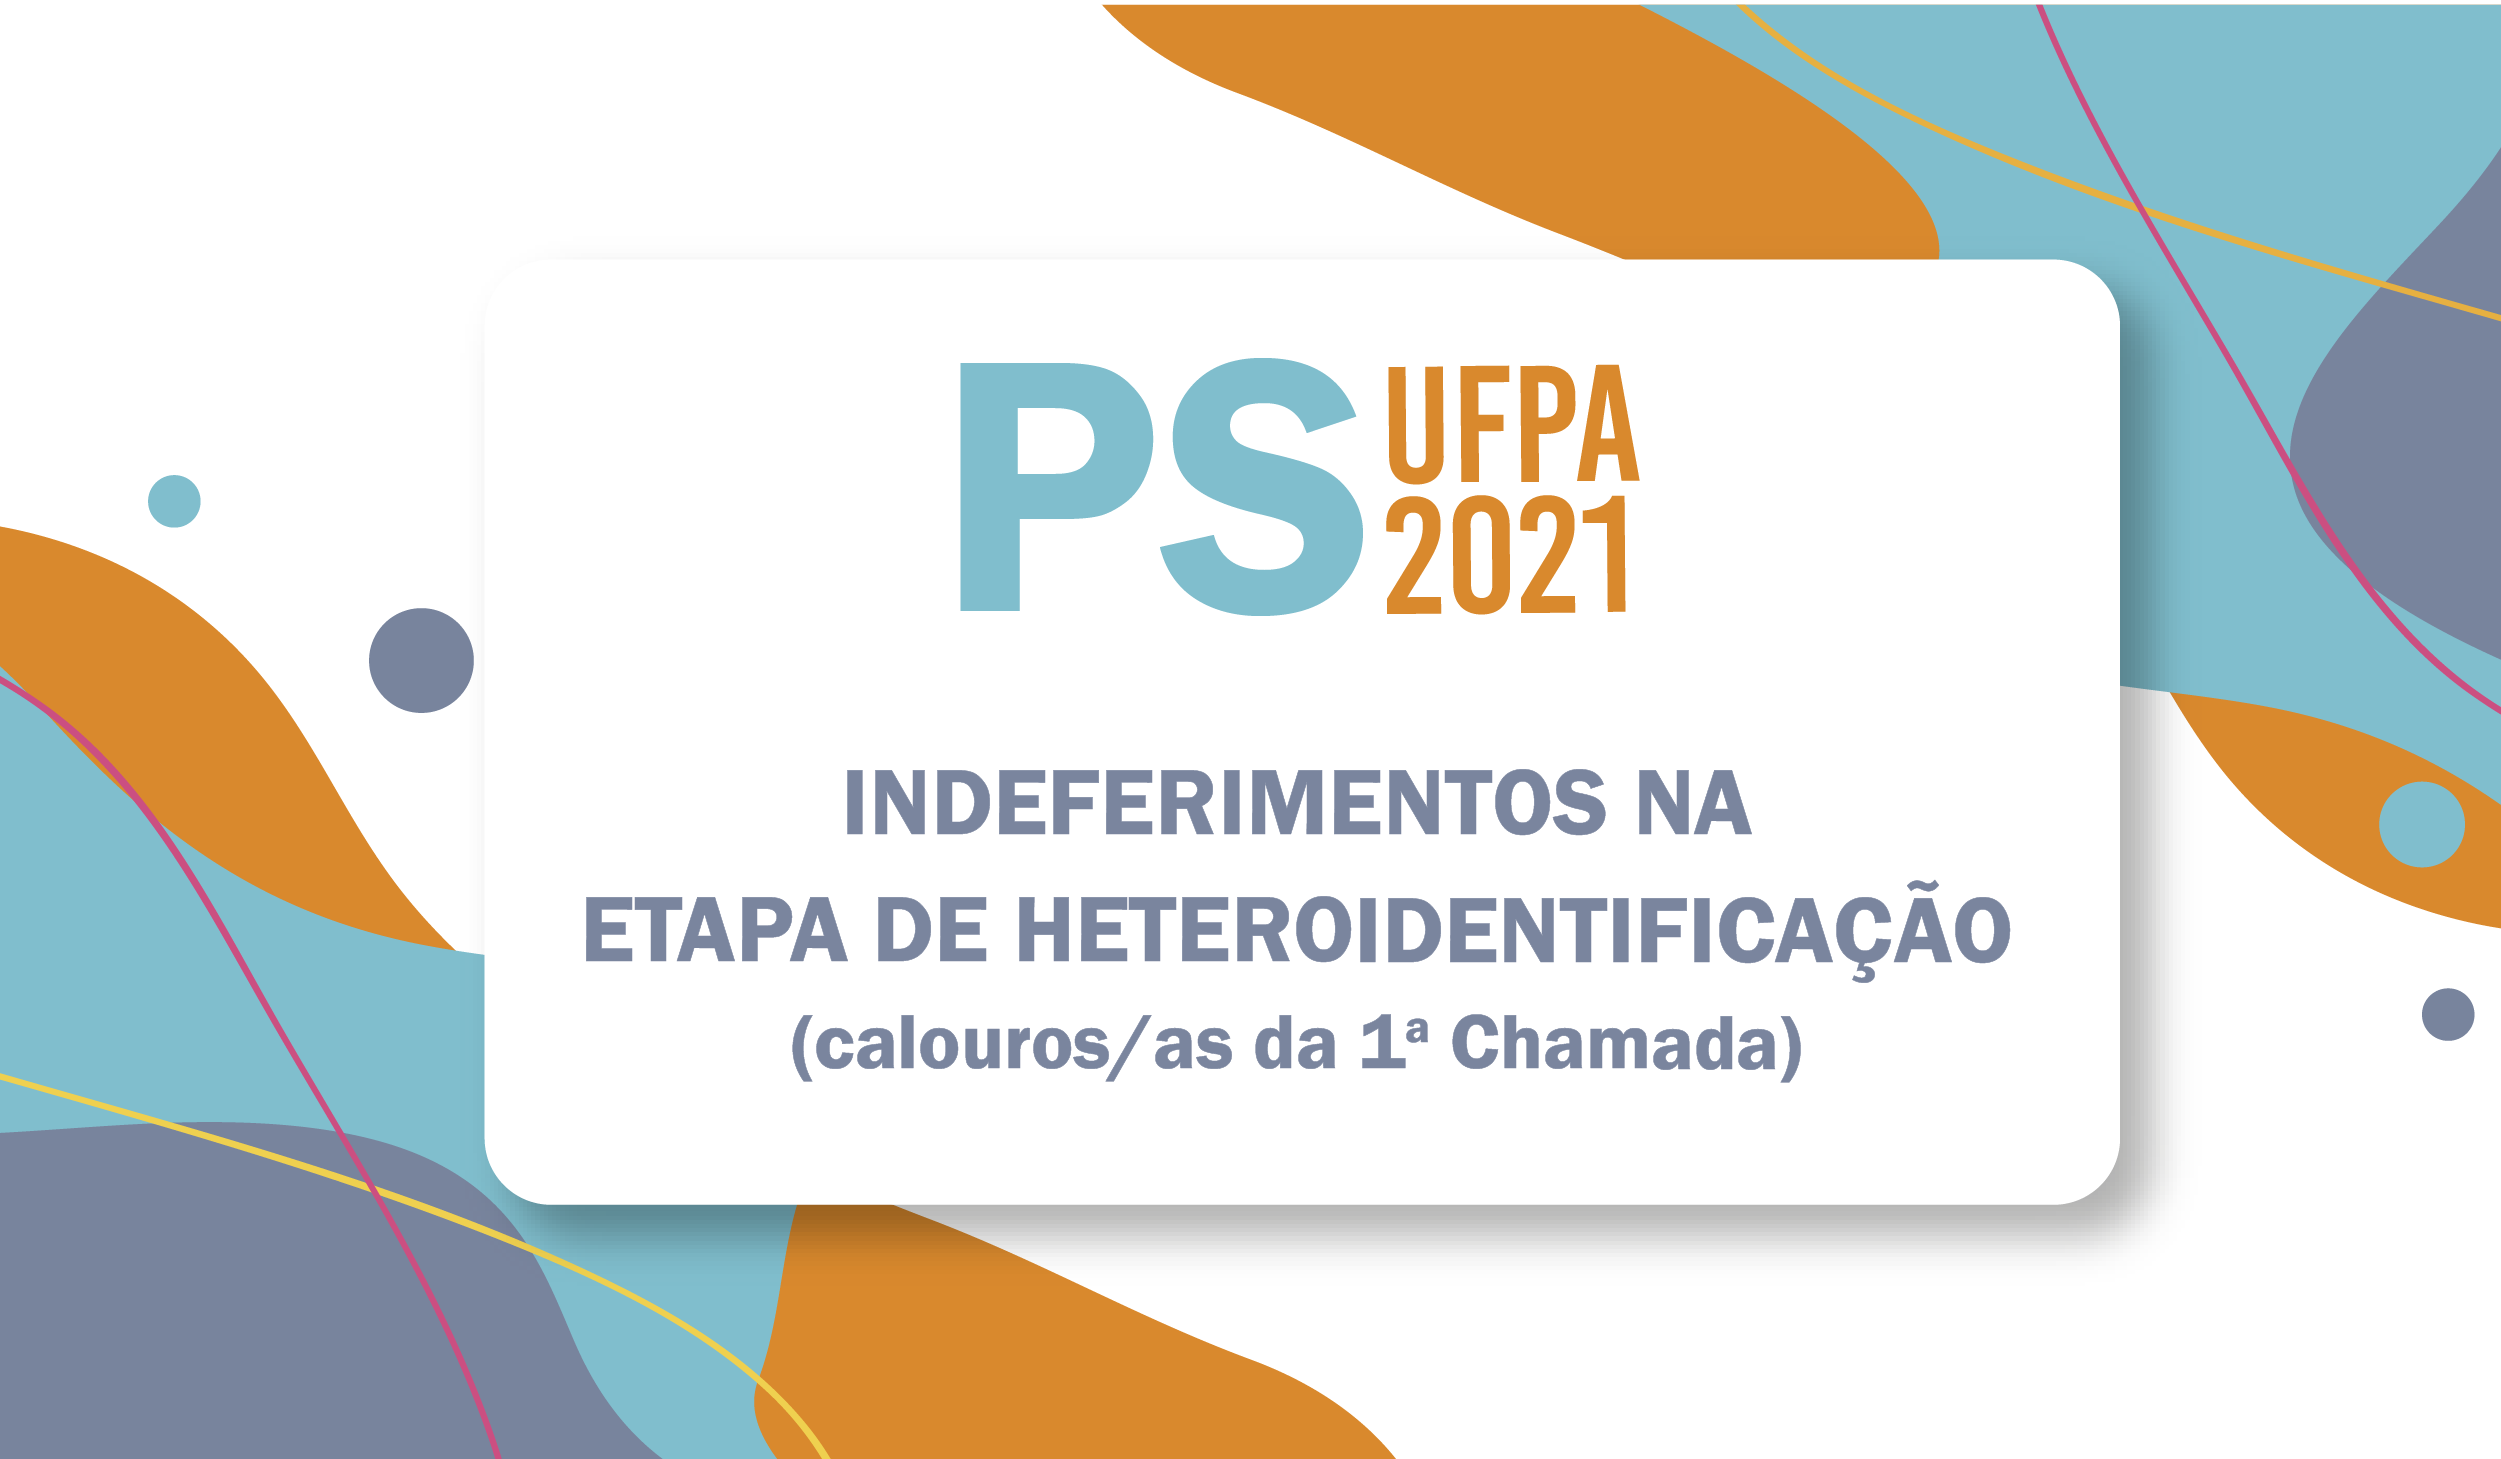 PS 2021 Indeferimentos Heteroidentificacao Portal